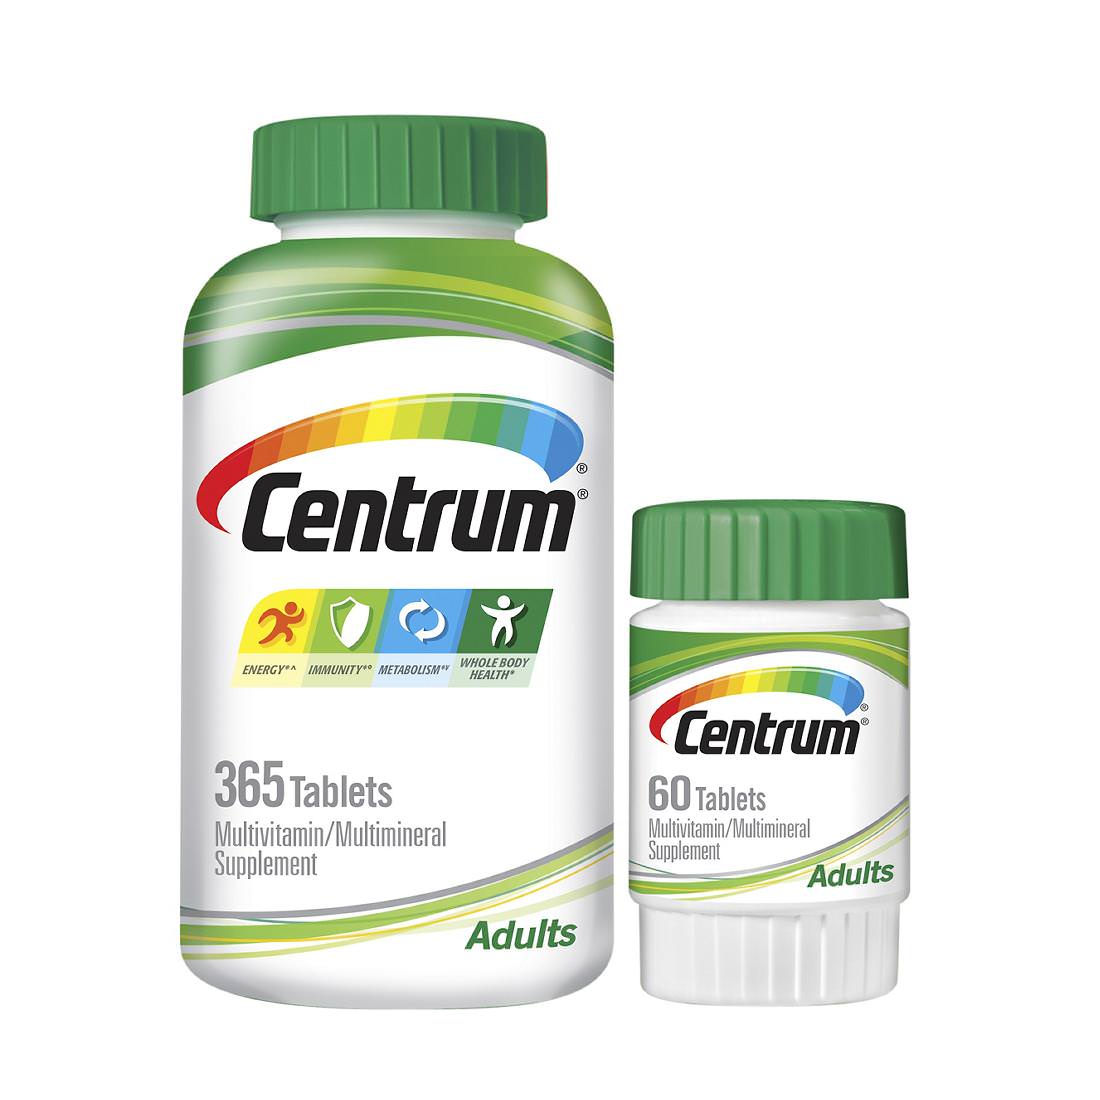 Viên uống Centrum multivitamin cho người dưới 50 tuổi - 425 viên của Mỹ